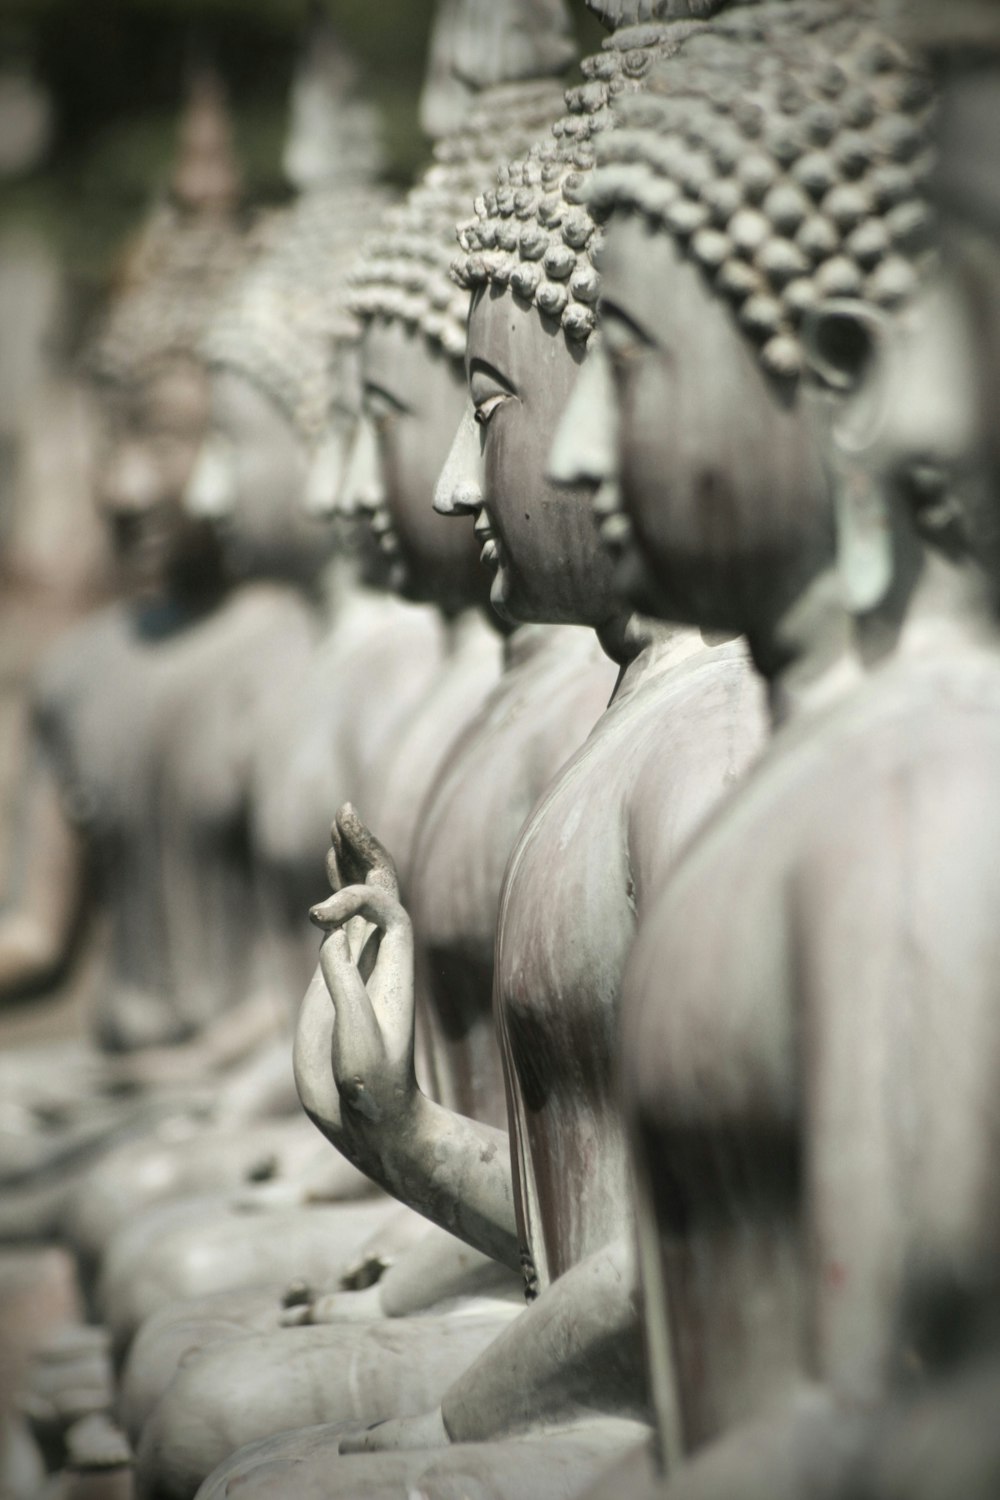 fotografia in scala di grigi della statua del Buddha